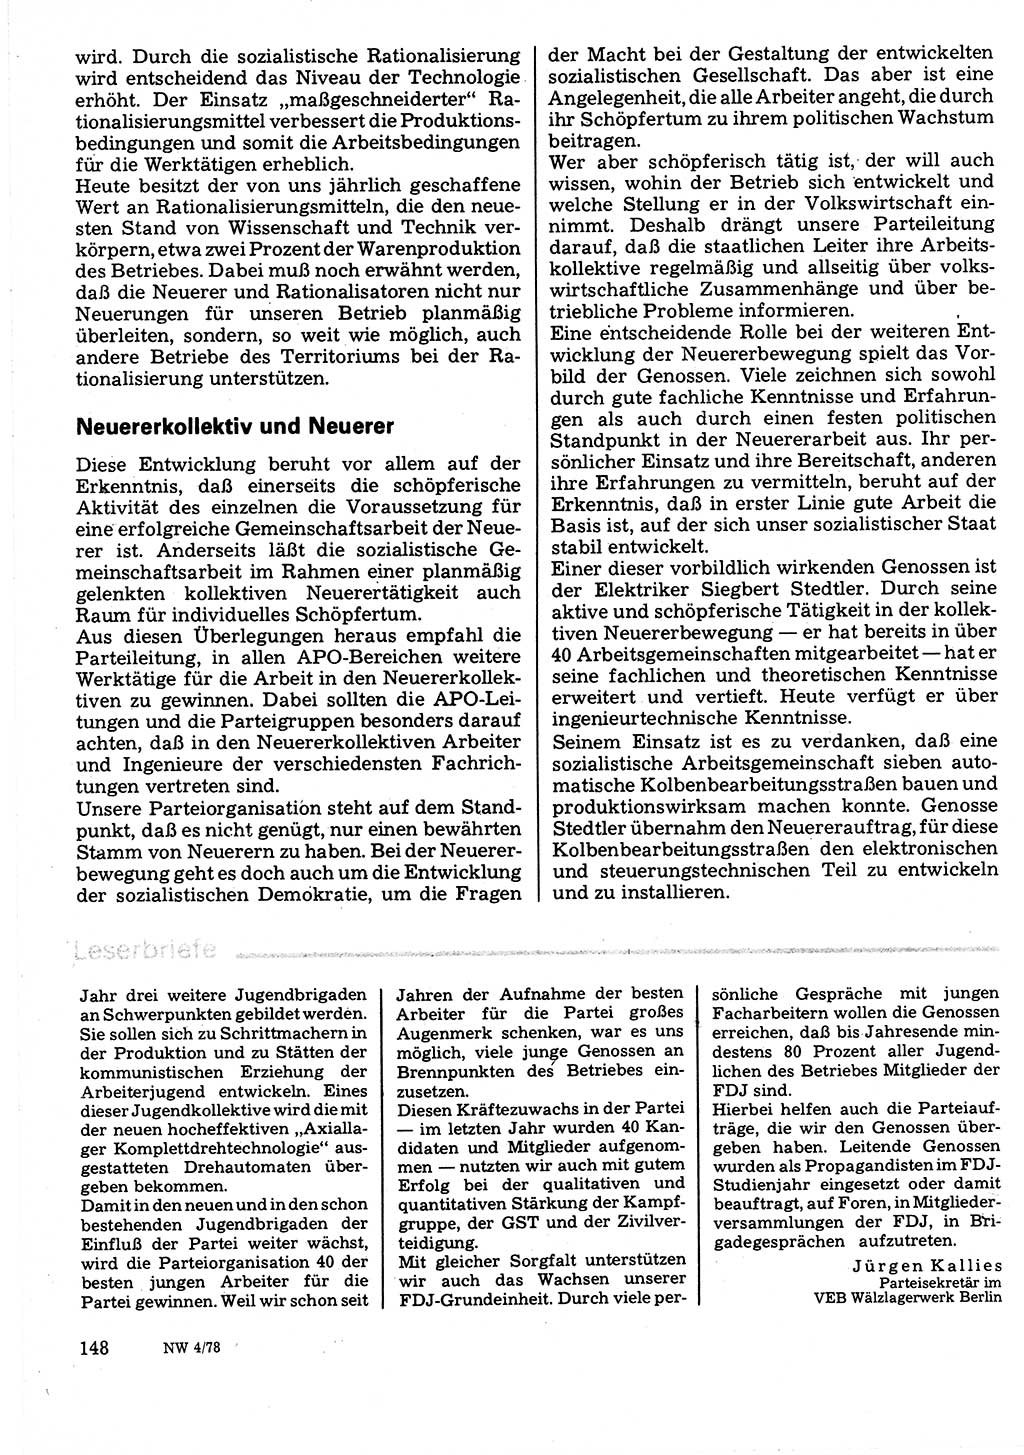 Neuer Weg (NW), Organ des Zentralkomitees (ZK) der SED (Sozialistische Einheitspartei Deutschlands) für Fragen des Parteilebens, 33. Jahrgang [Deutsche Demokratische Republik (DDR)] 1978, Seite 148 (NW ZK SED DDR 1978, S. 148)